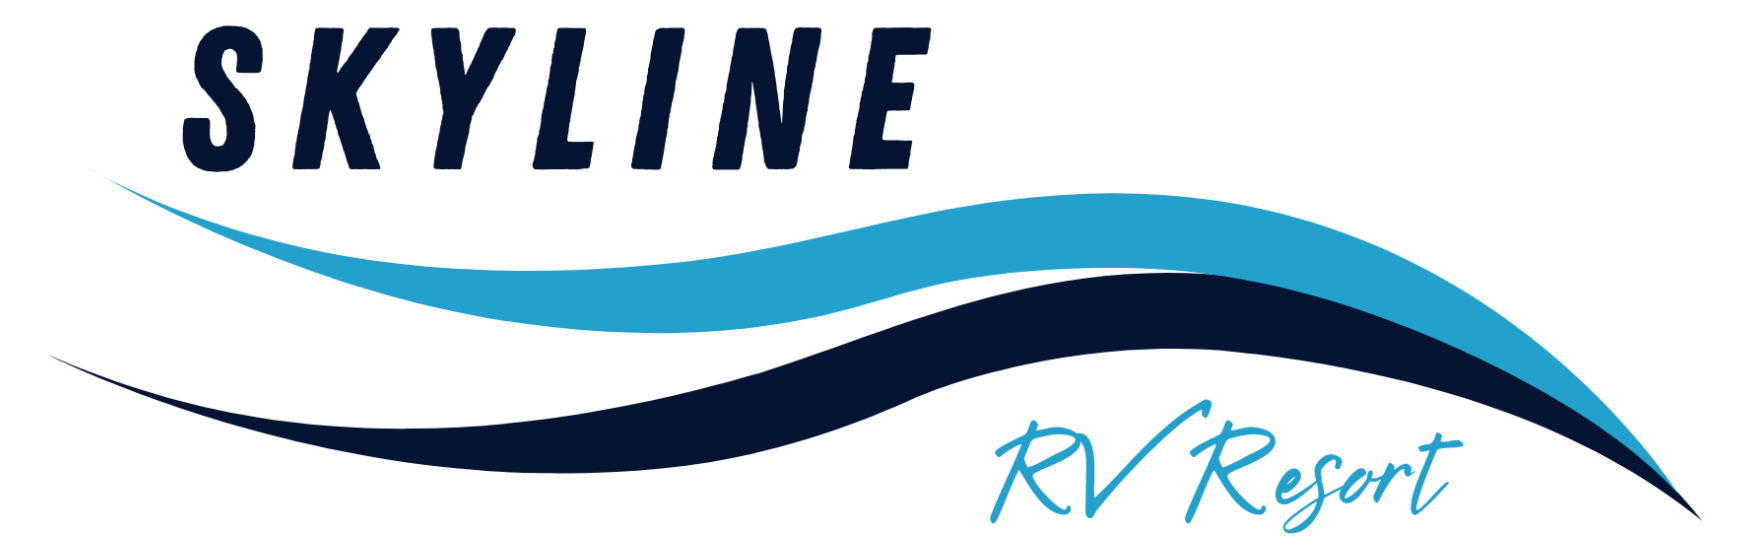 Skyline RV Resort logo